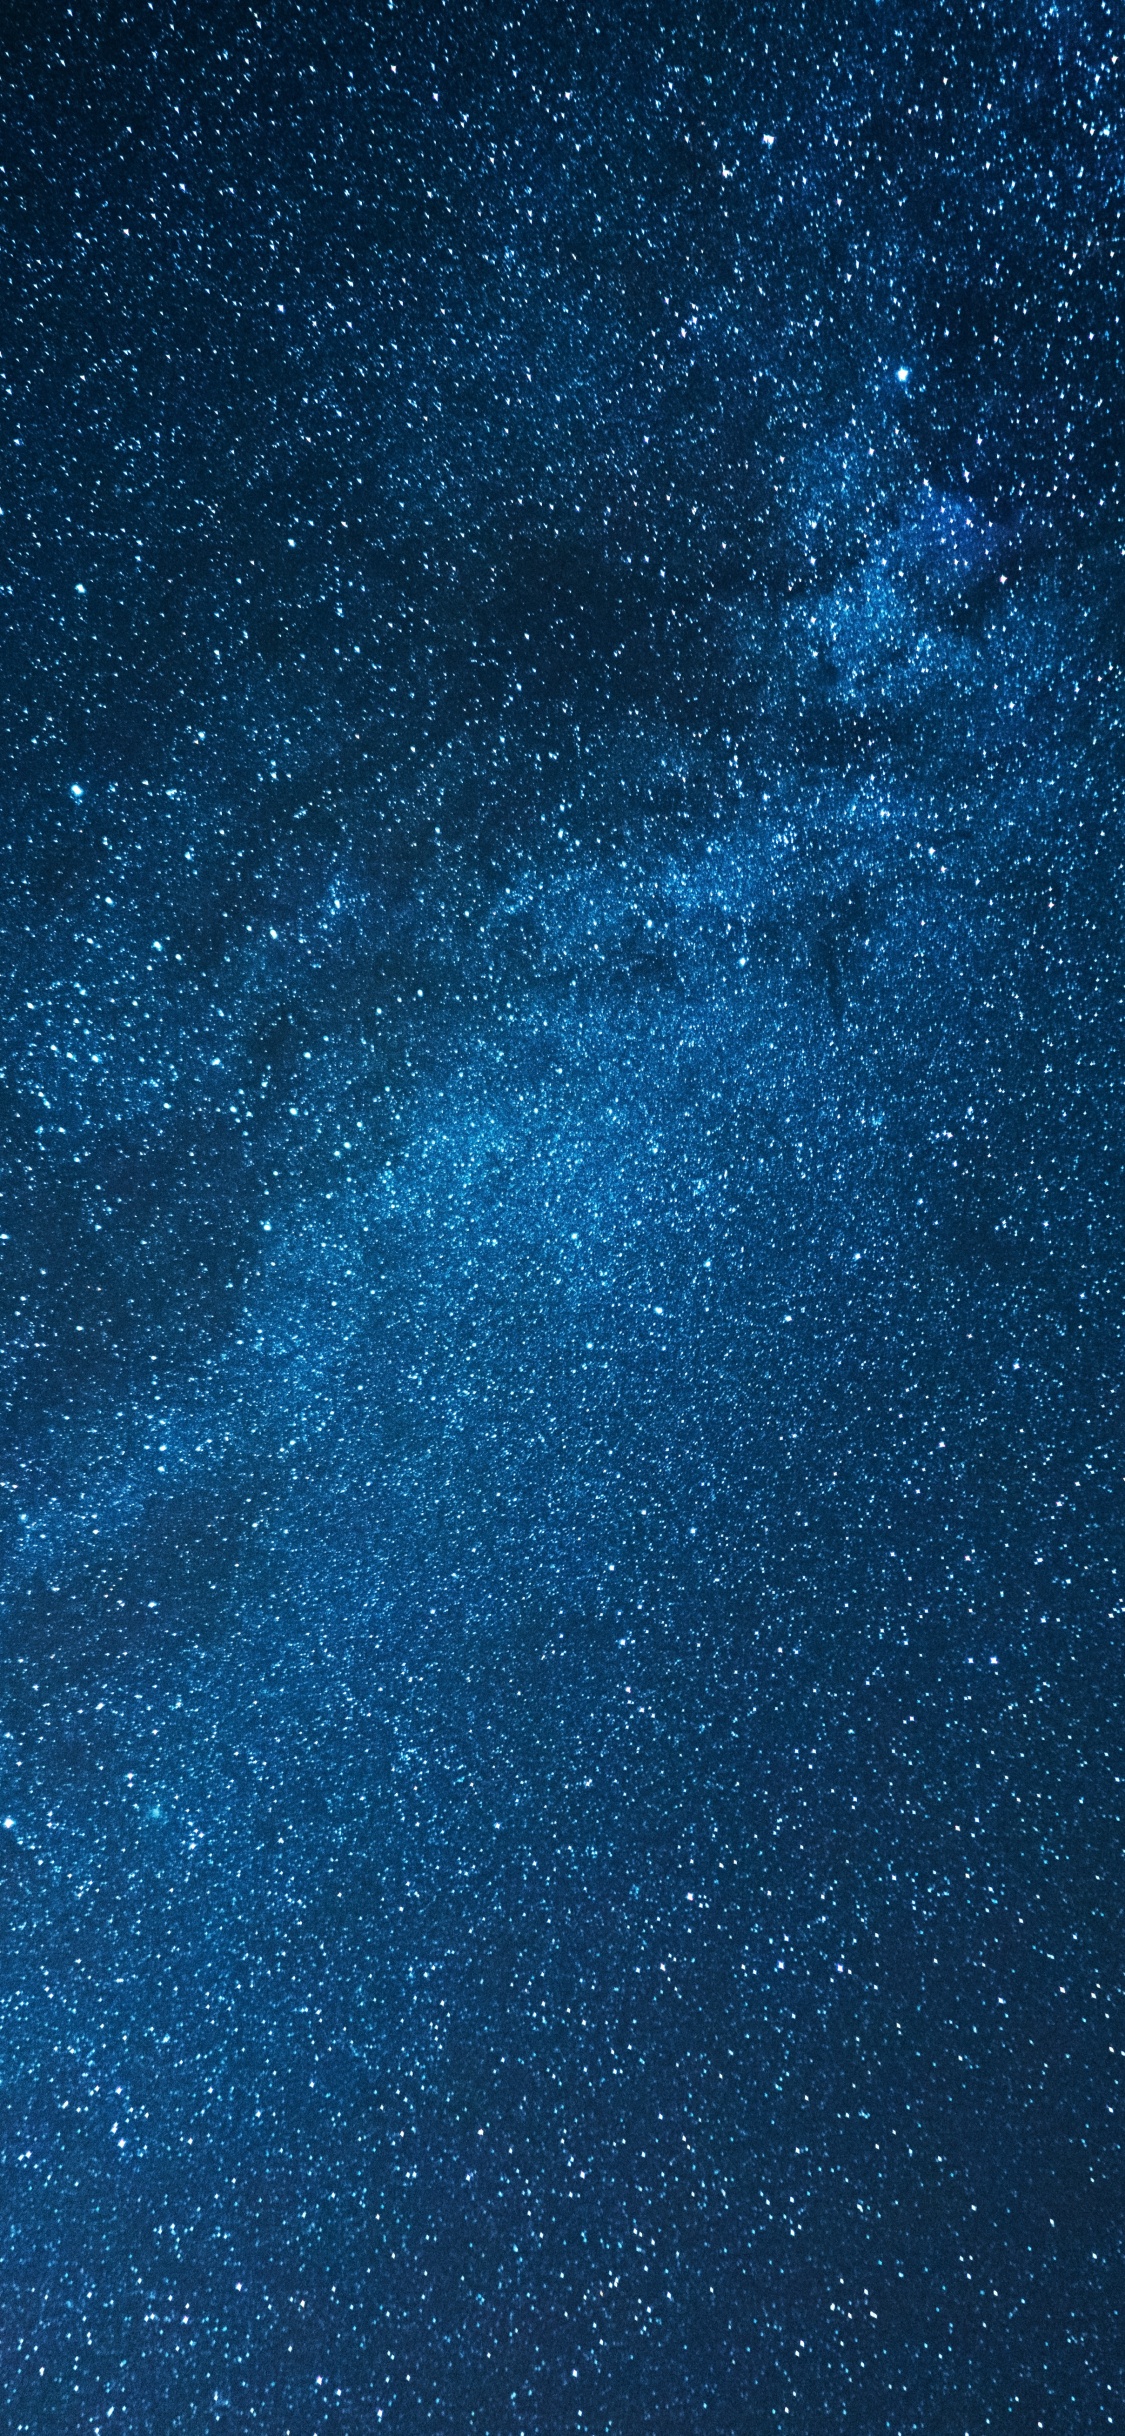 Cielo Estrellado Azul y Blanco. Wallpaper in 1125x2436 Resolution